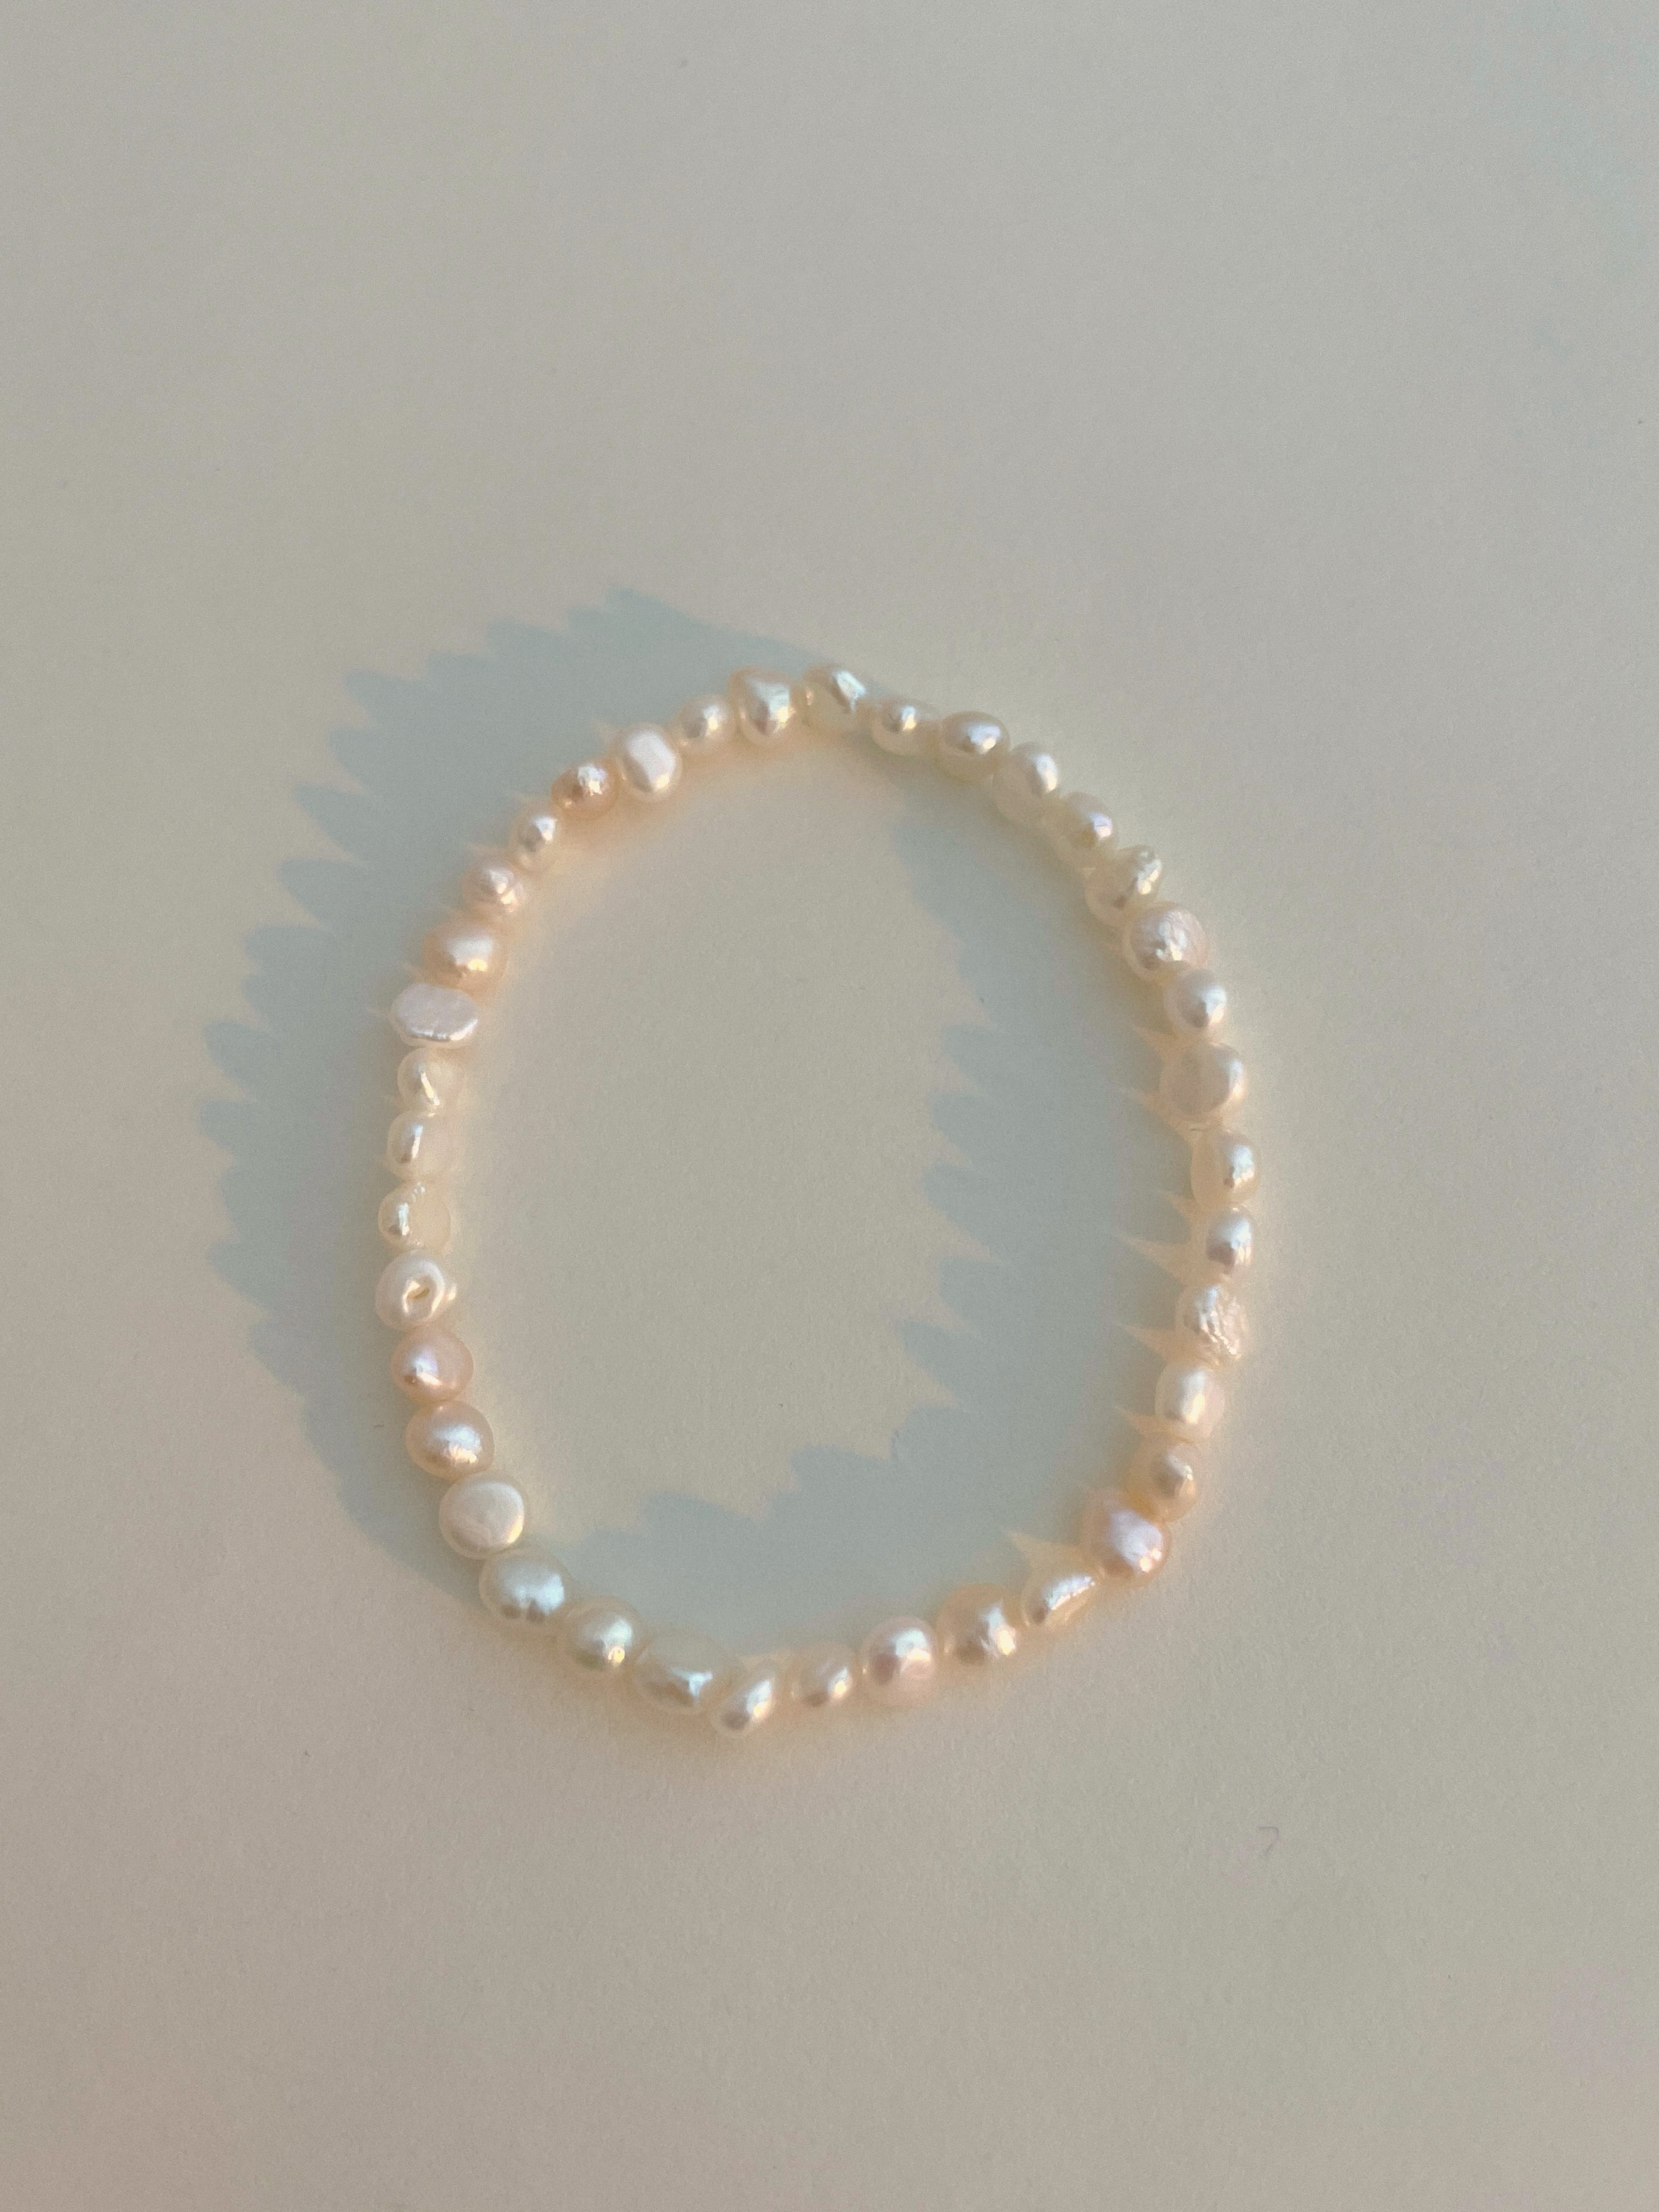 Freshwater pearl banding bracelet